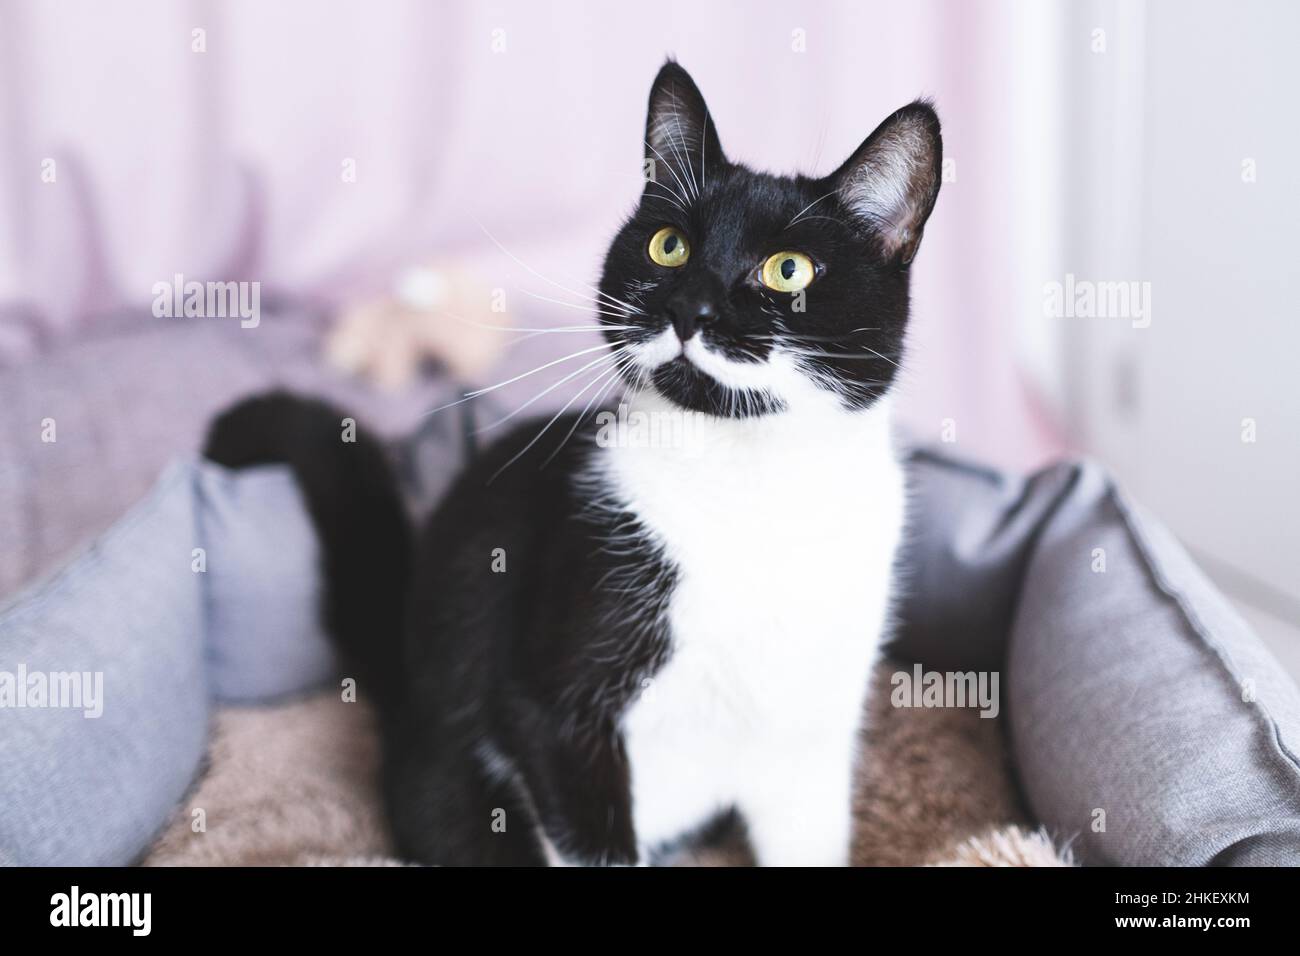 Jeune chat noir avec des whiskers blancs et des yeux jaunes intelligents est assis dans le lit de chat.Couleur rare inhabituelle de l'animal.Portrait de noir et blanc ludique Banque D'Images